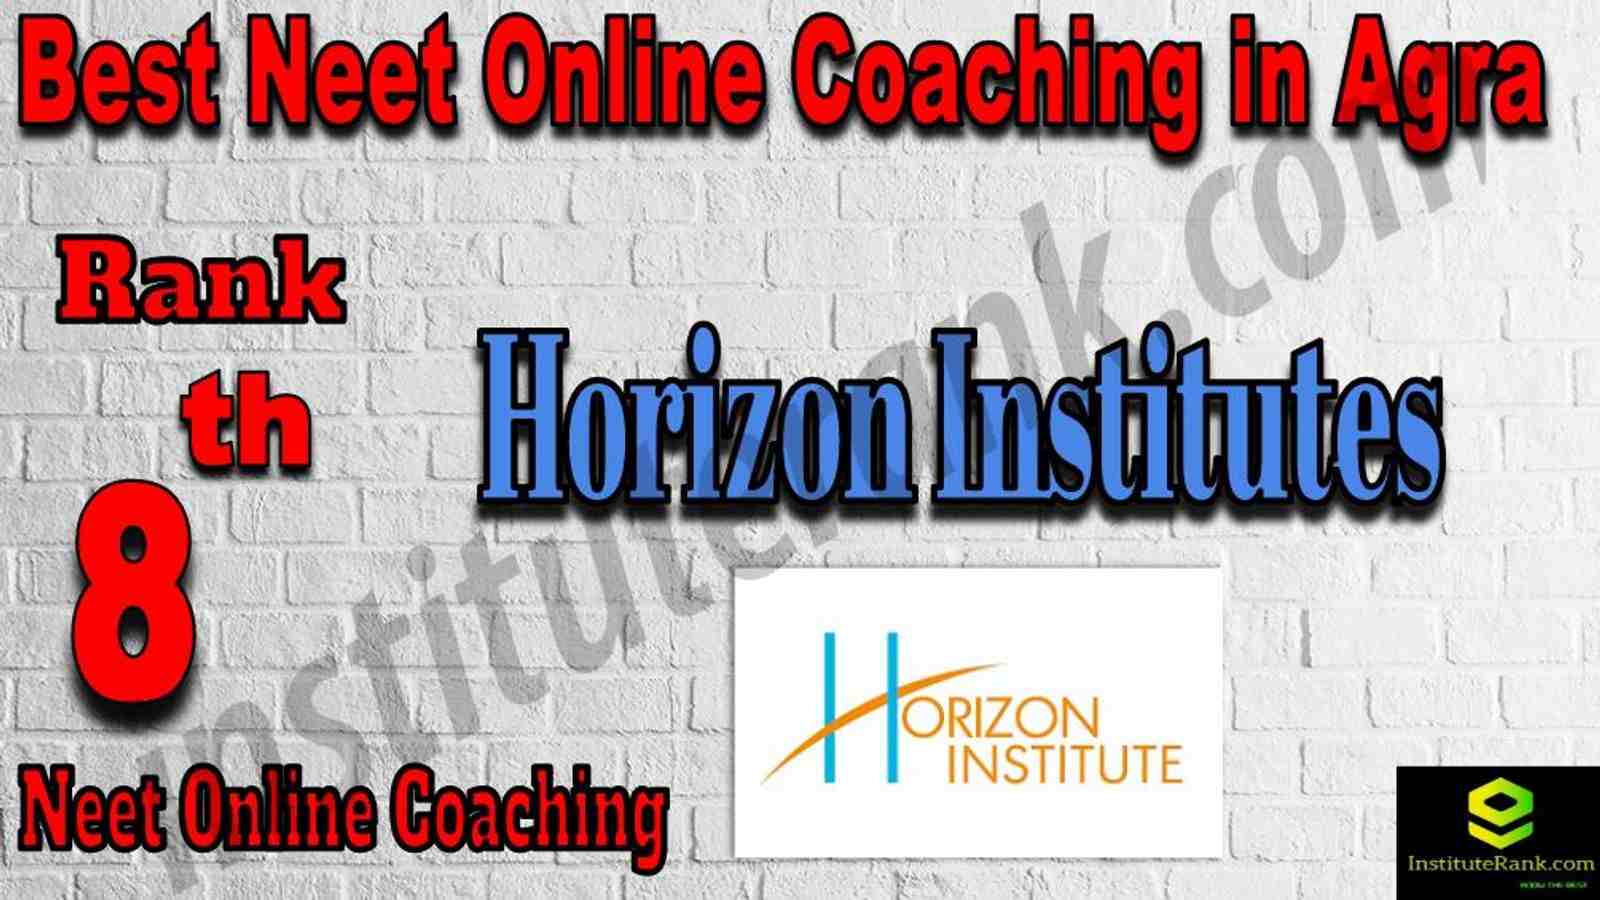 8th Best NEET Online Coaching in Agra